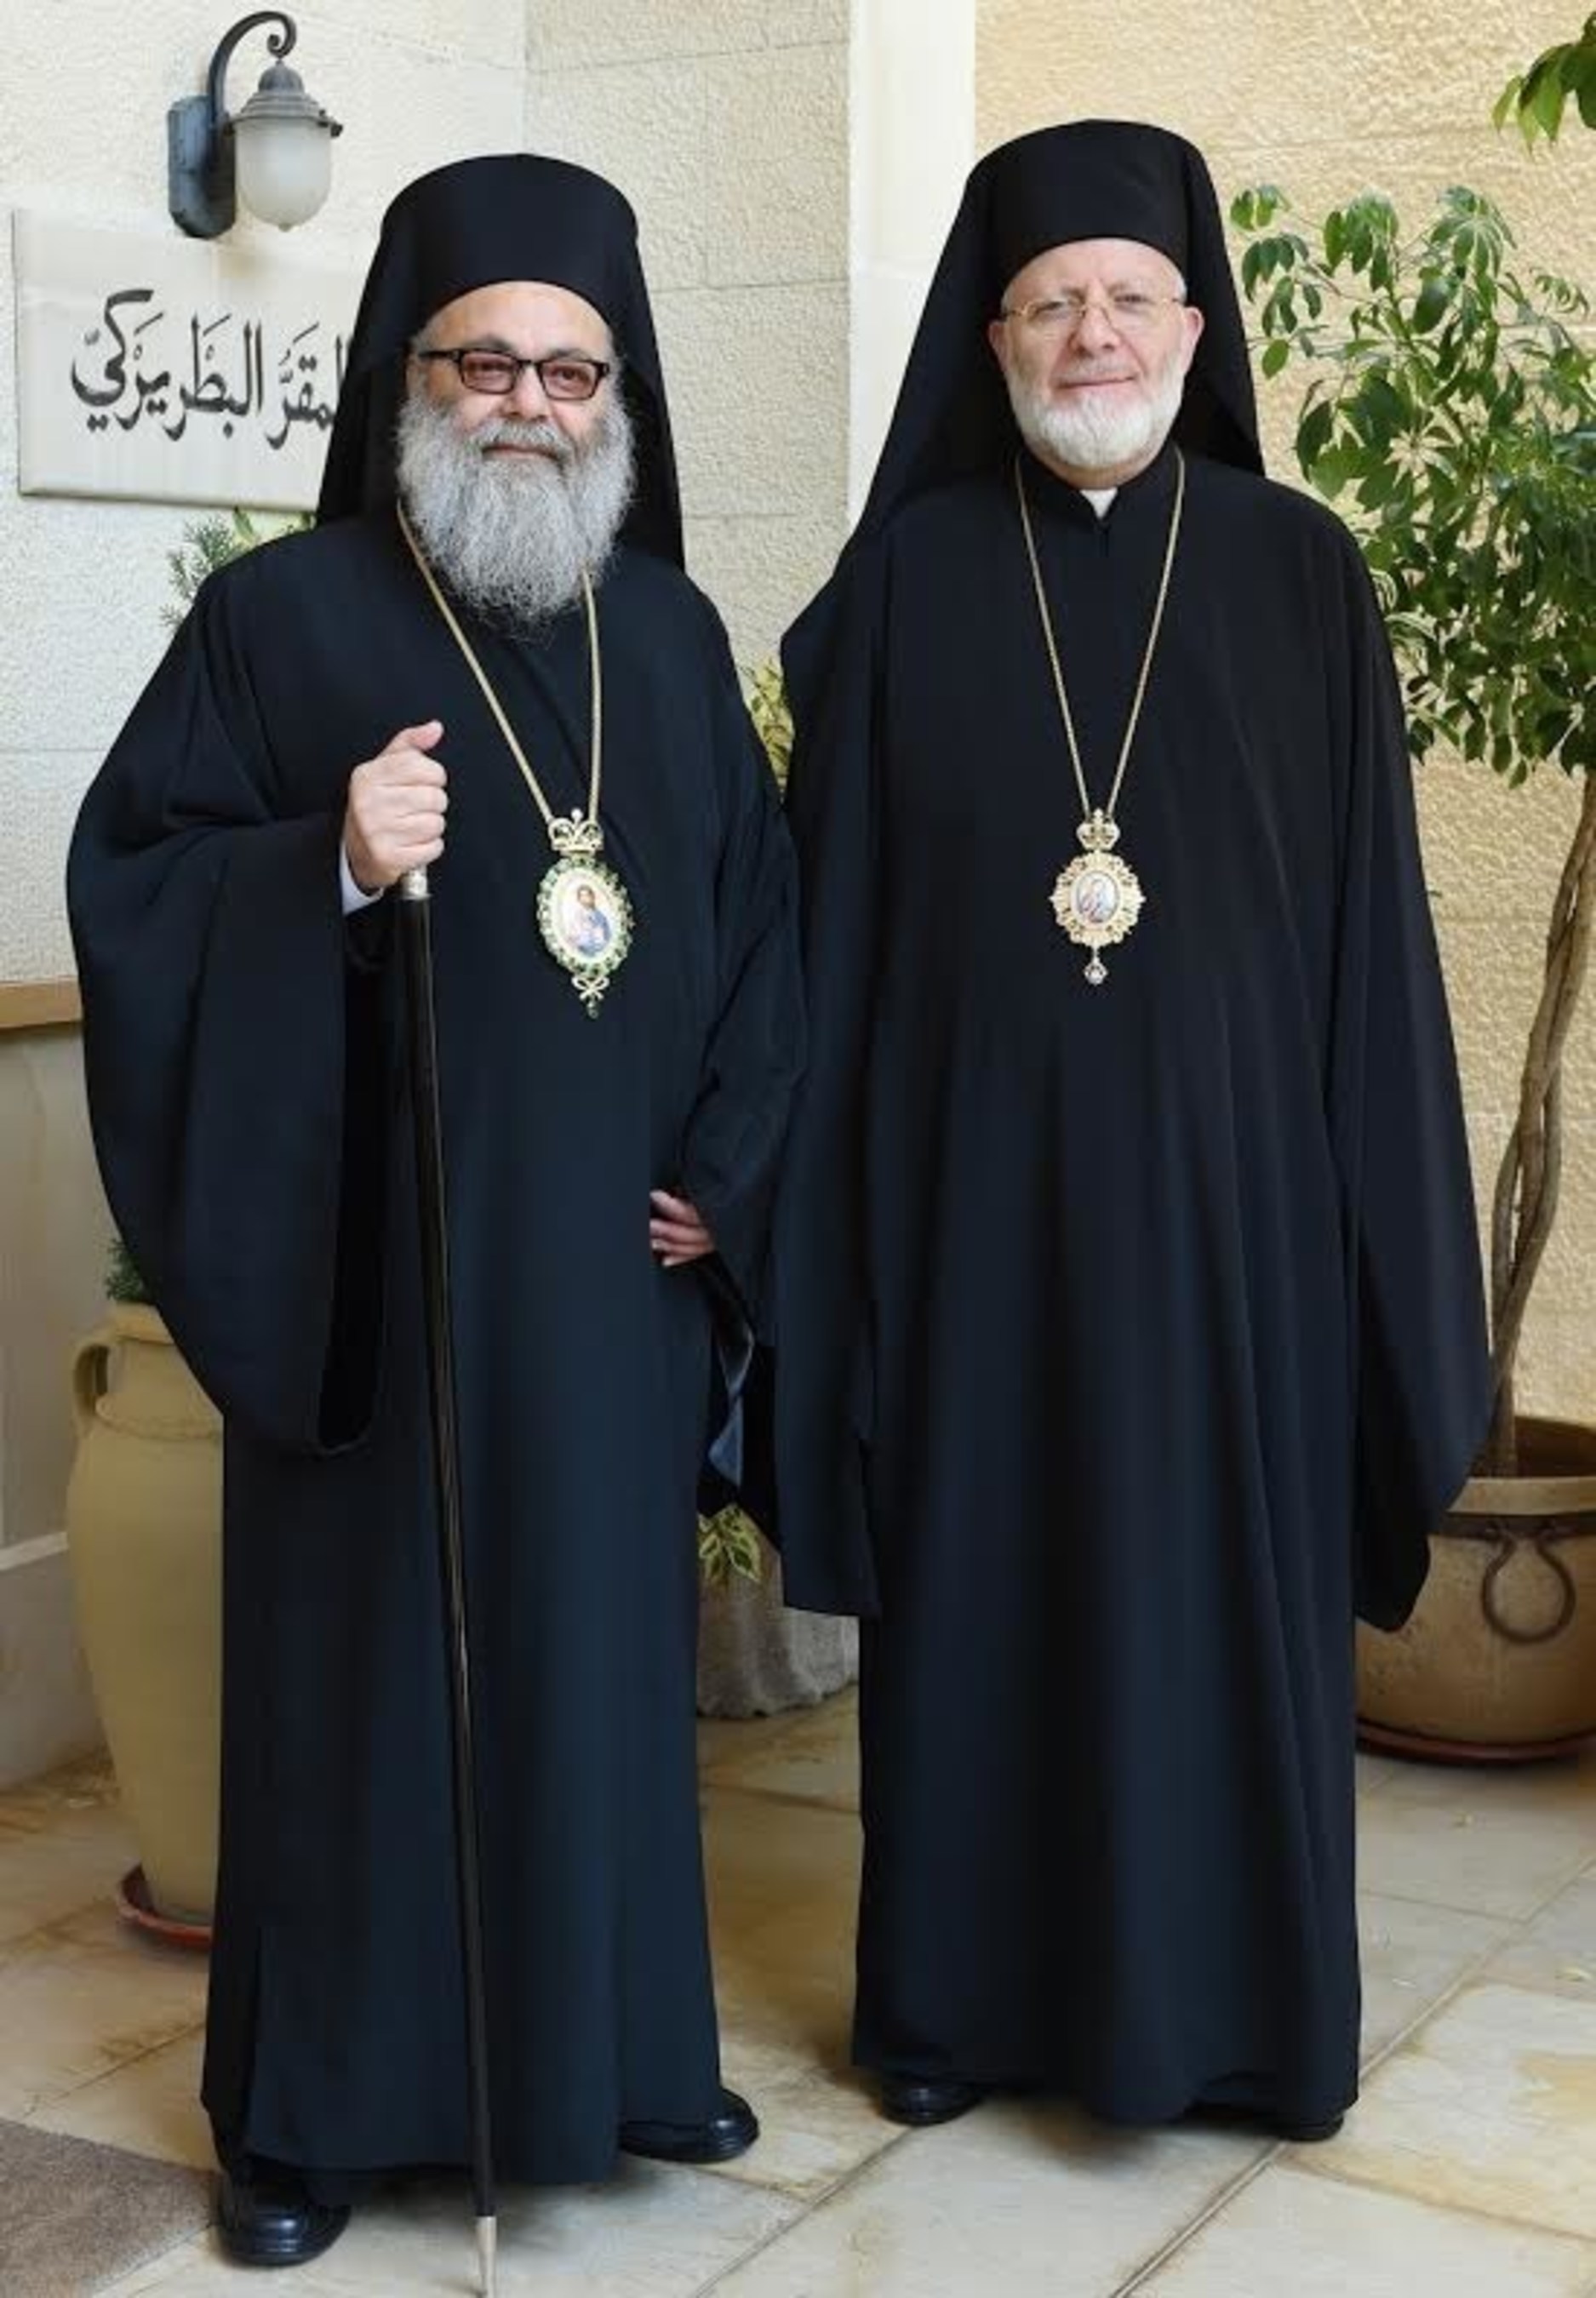 Patriarch John X and Metropolitan Joseph